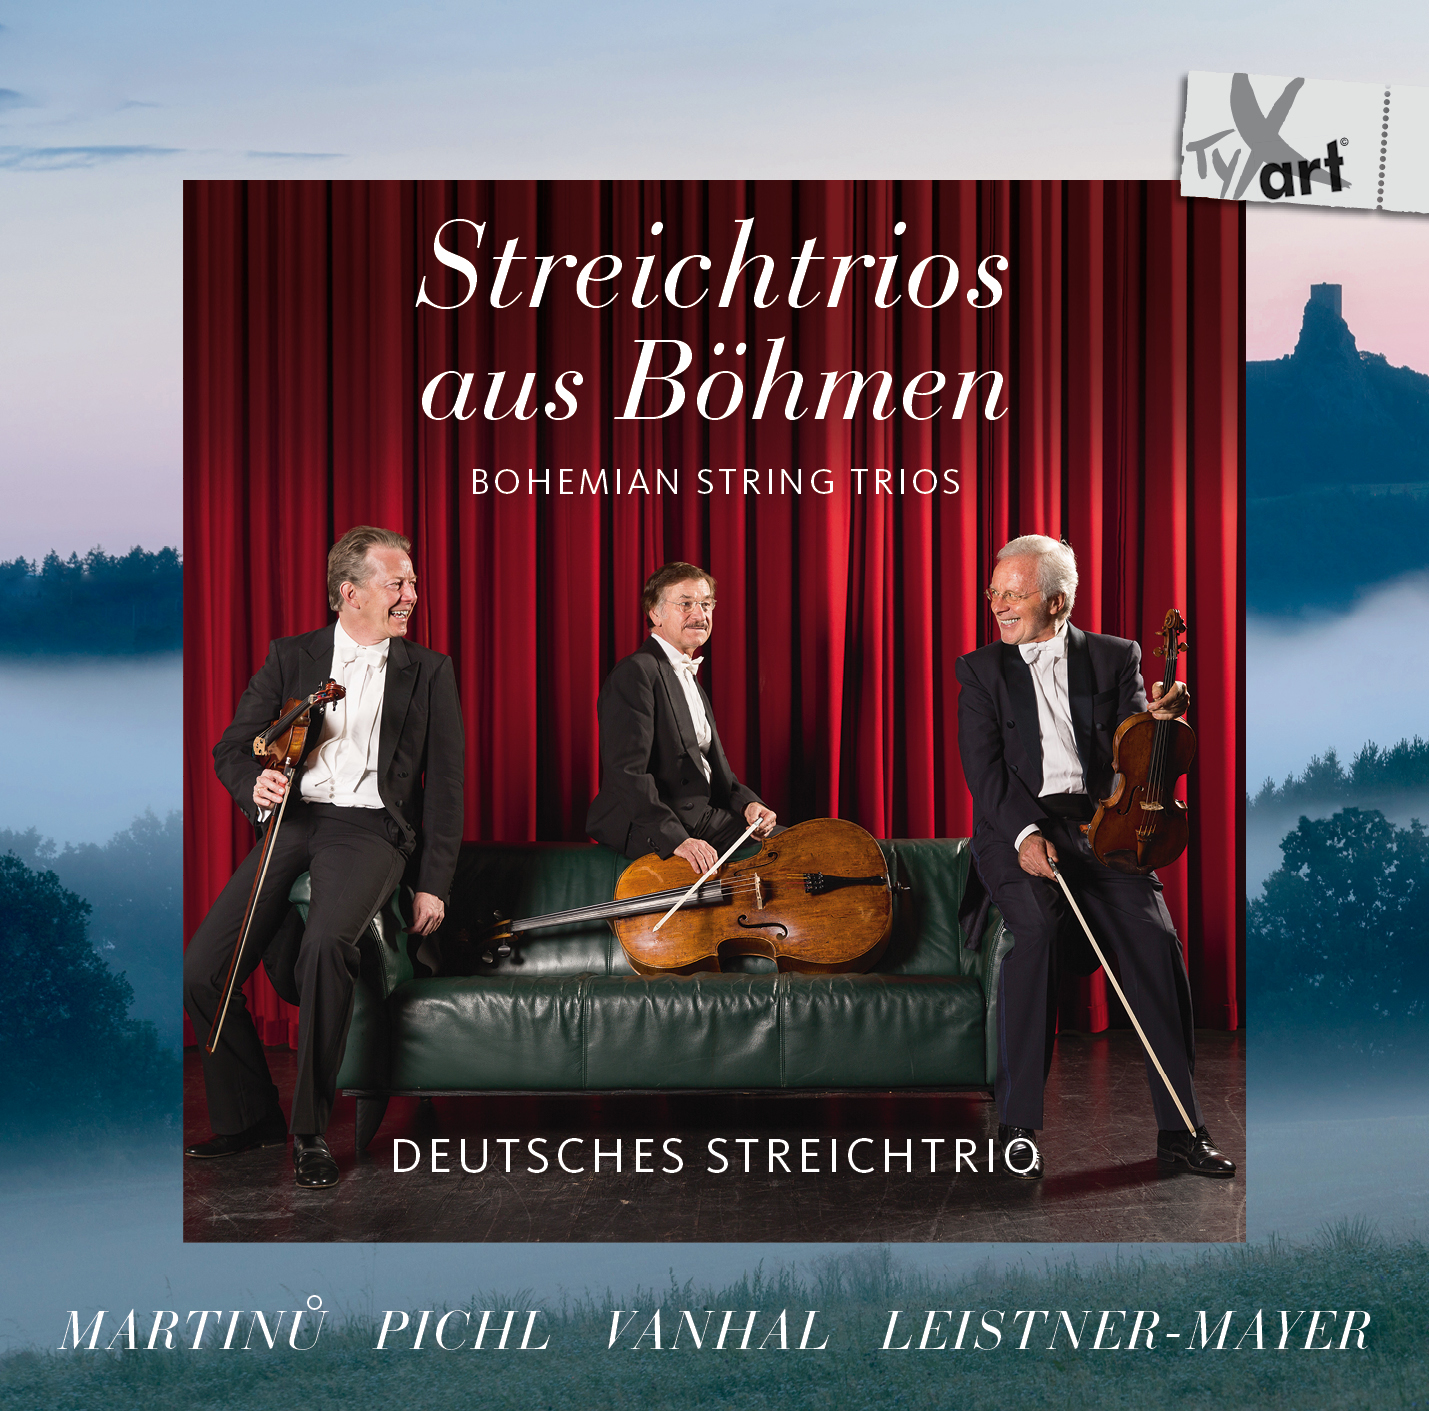 Bohemian String Trios - DEUTSCHES STREICHTRIO (German String Trio)